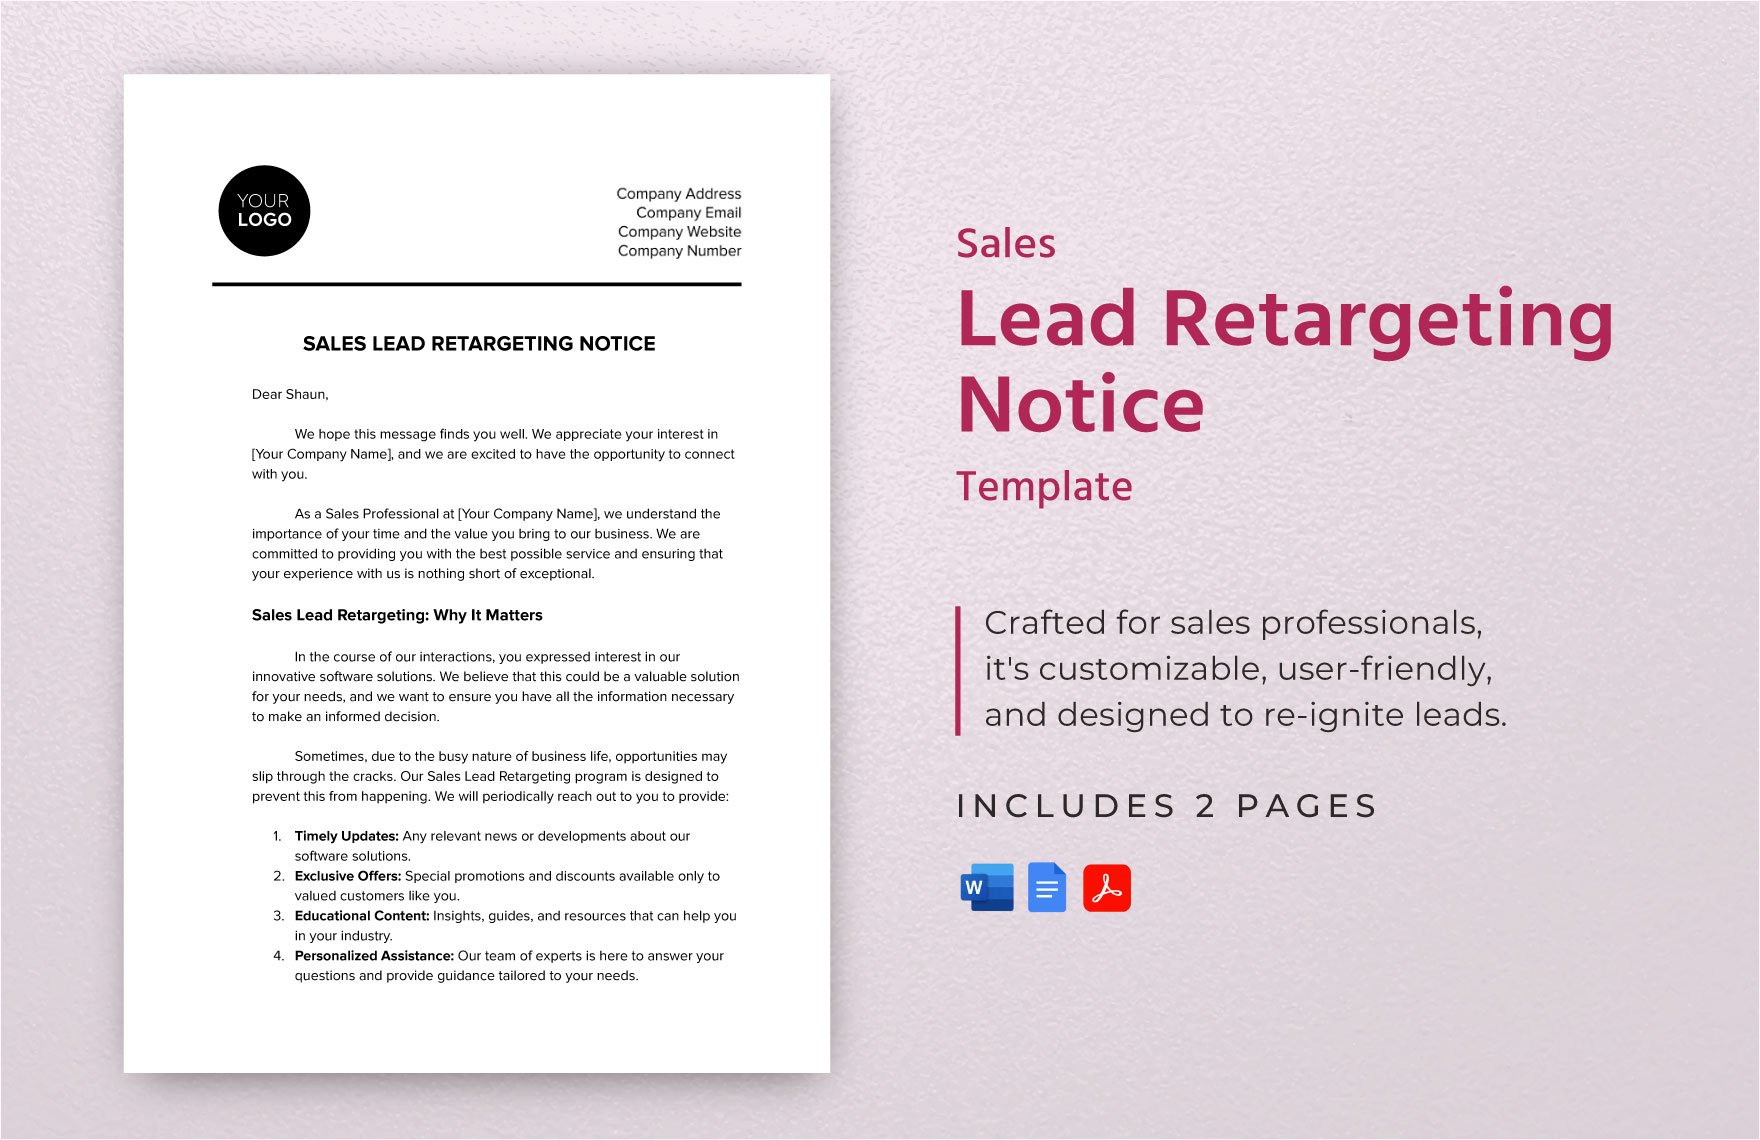 Sales Lead Retargeting Notice Template in Word, Google Docs, PDF